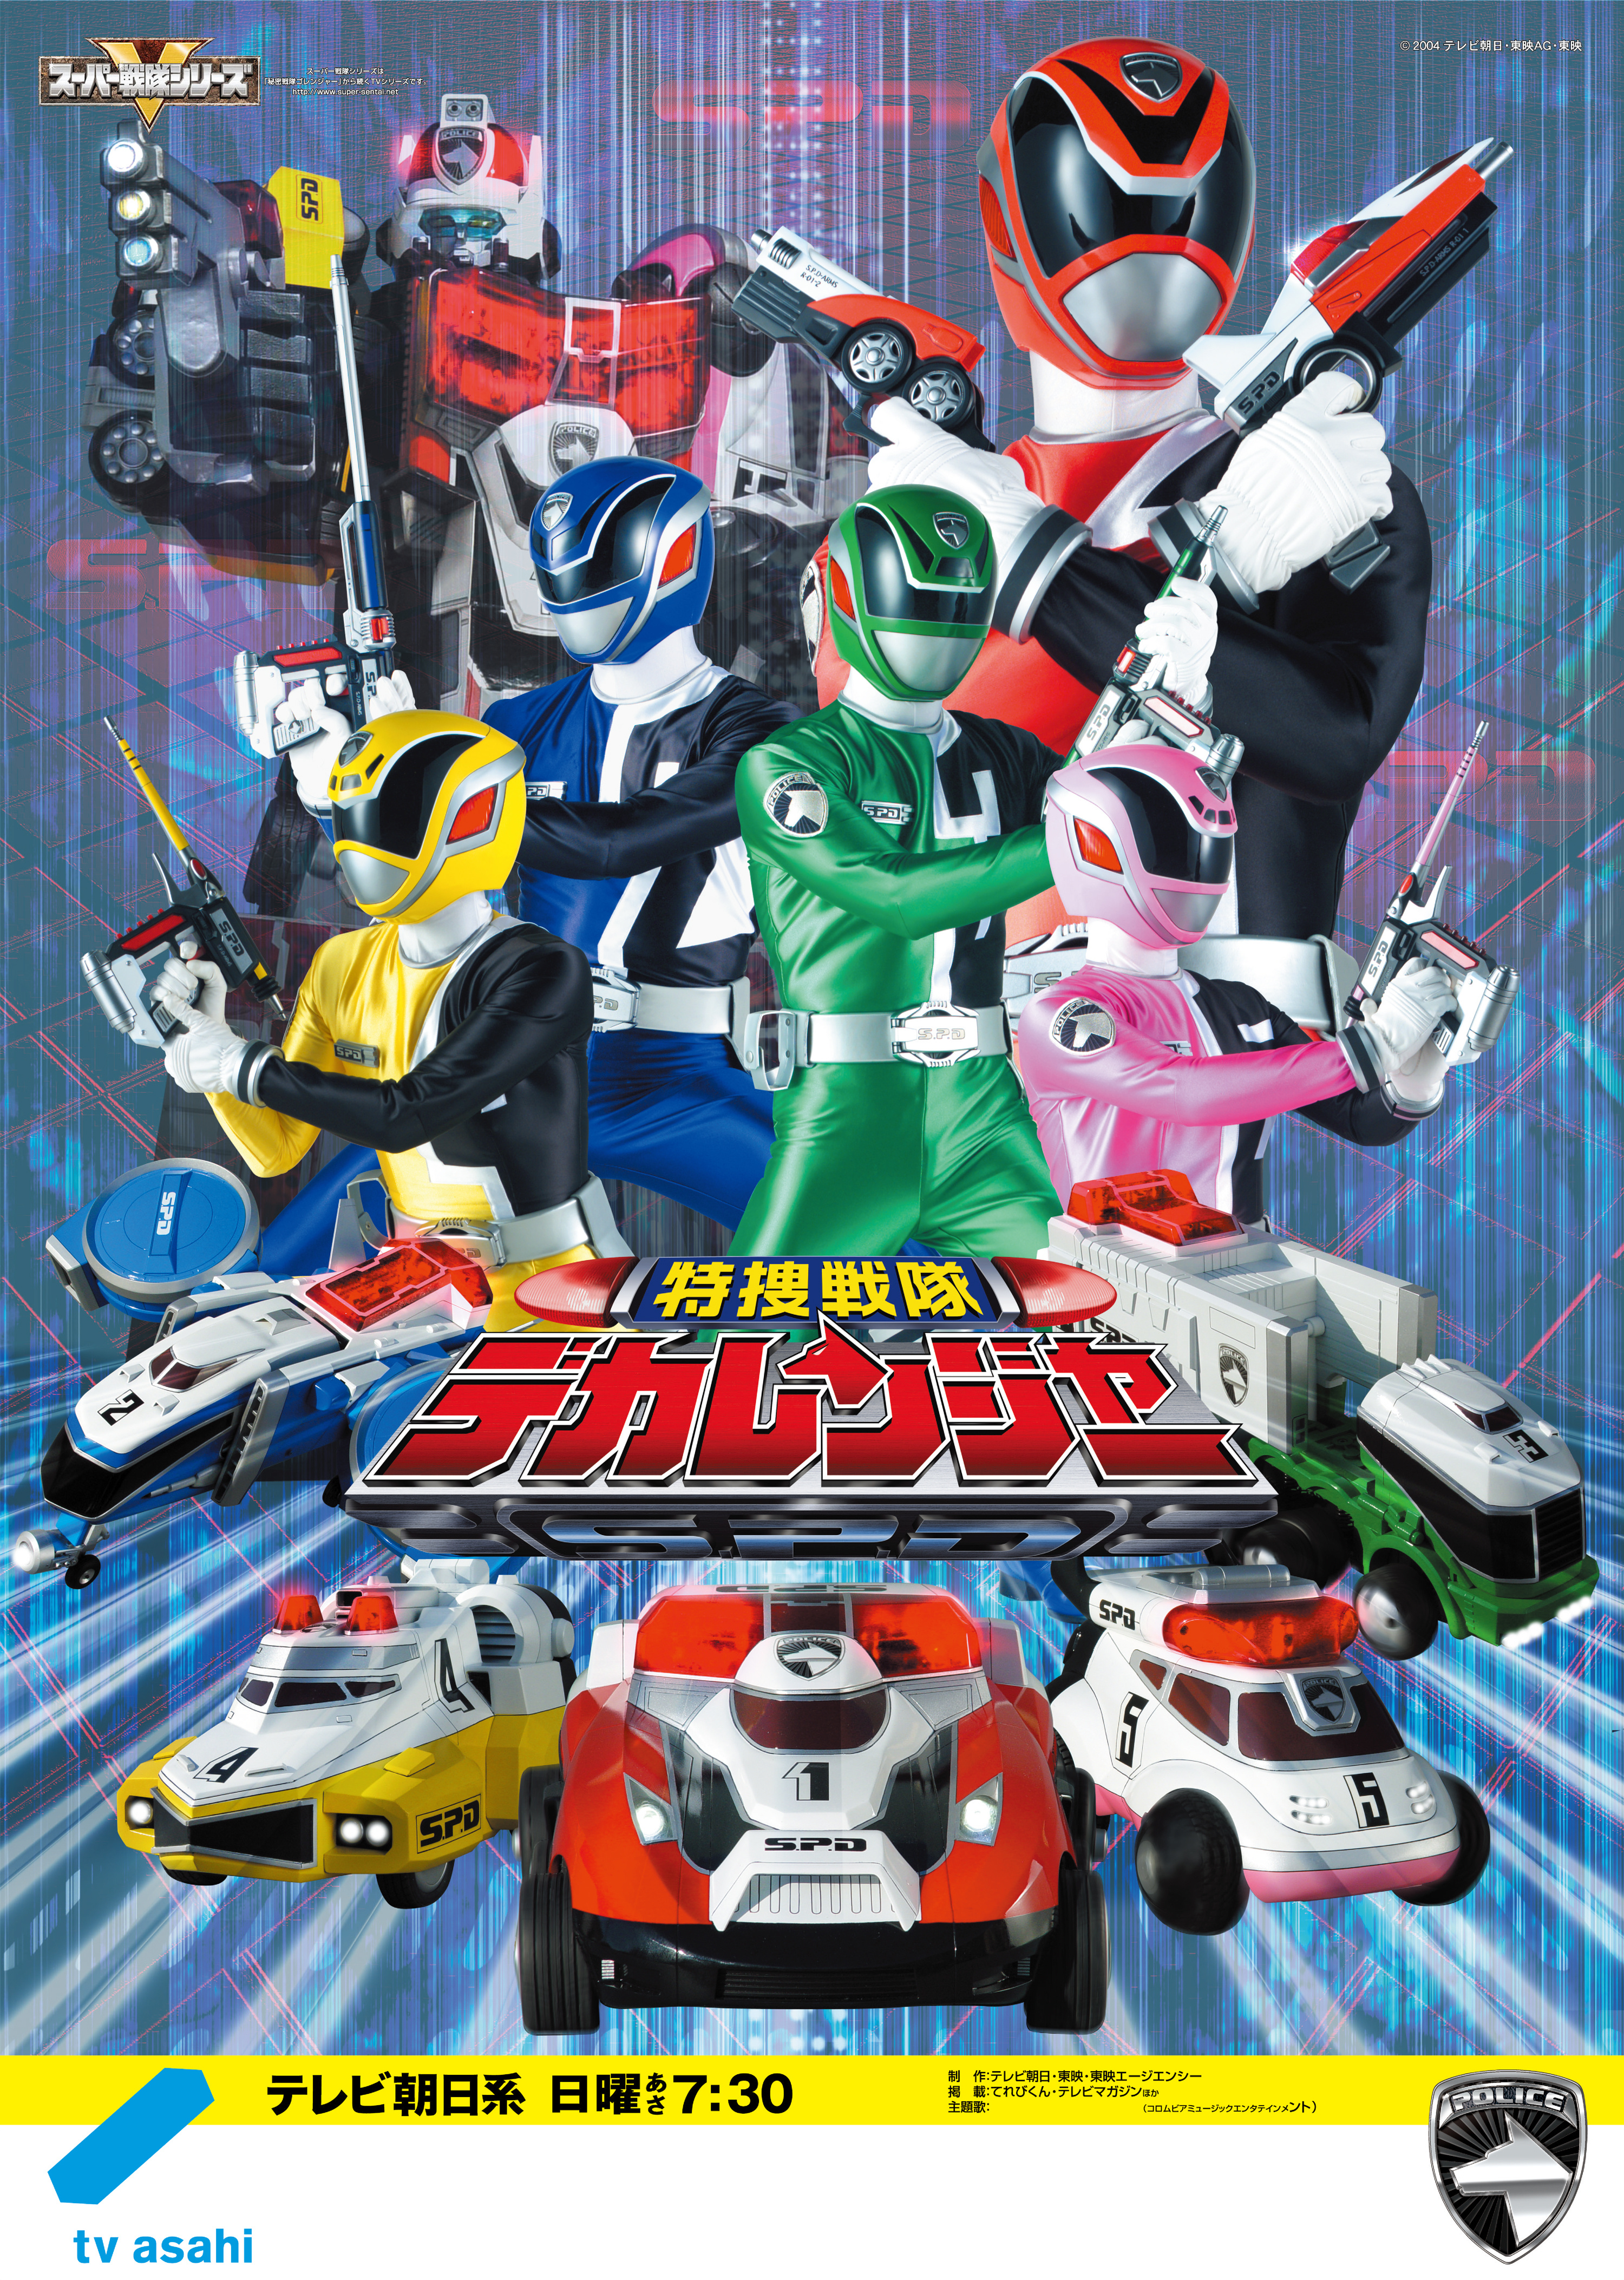 Tokusou Sentai Dekaranger | RangerWiki | Fandom